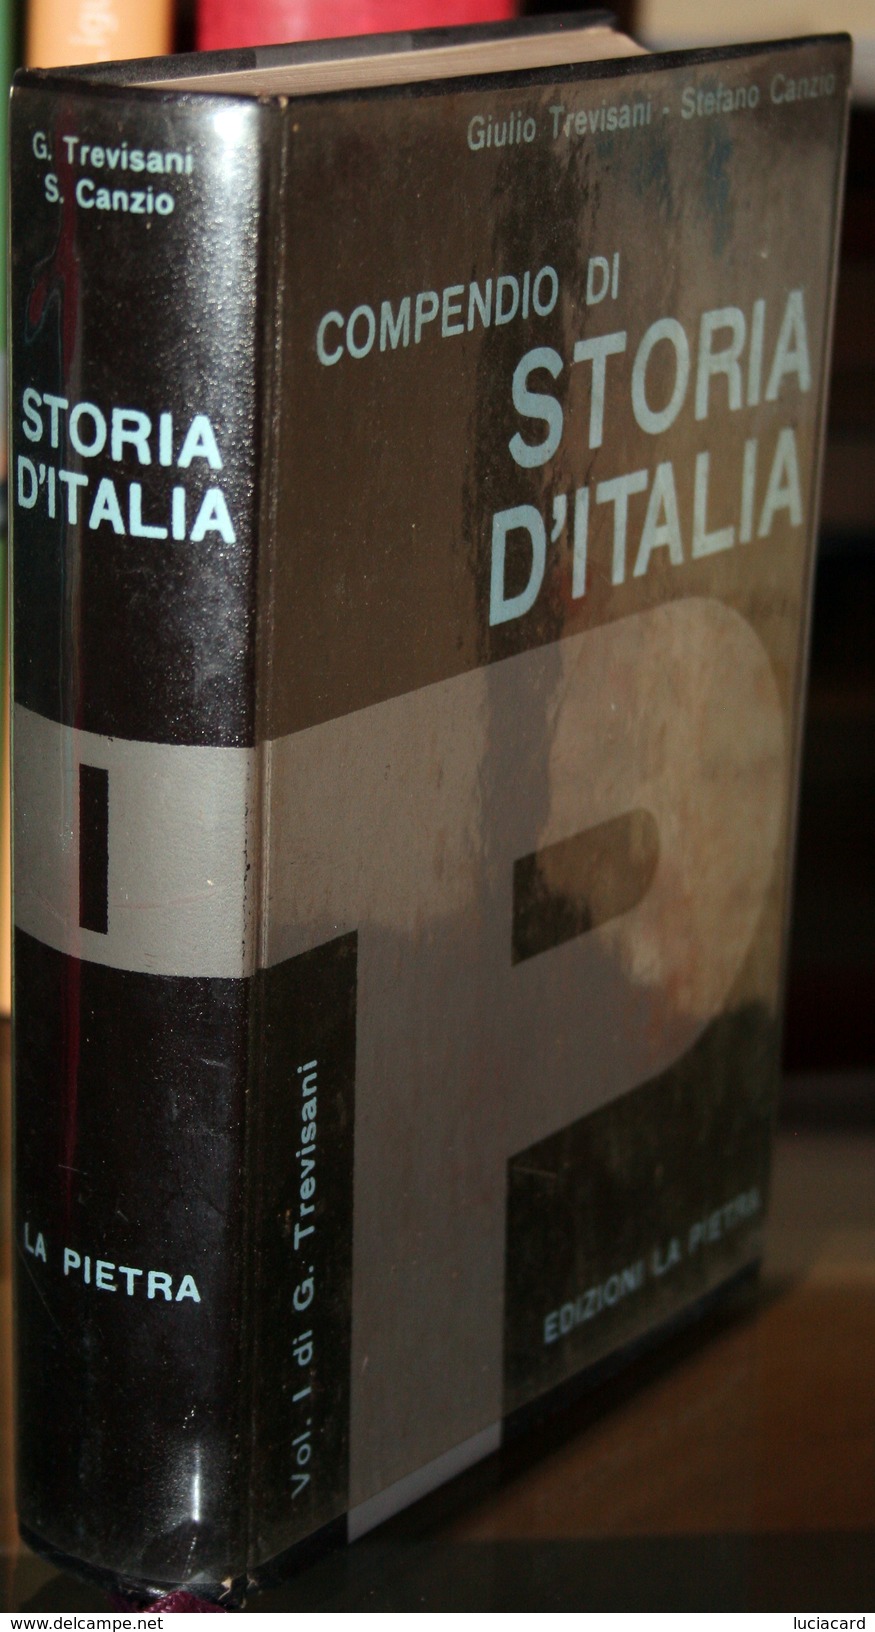 LIBRO -COMPENDIO DI STORIA D'ITALIA -VOLUME 1 DI G. TREVISANI -EDIZIONI LA PIETRA - Storia